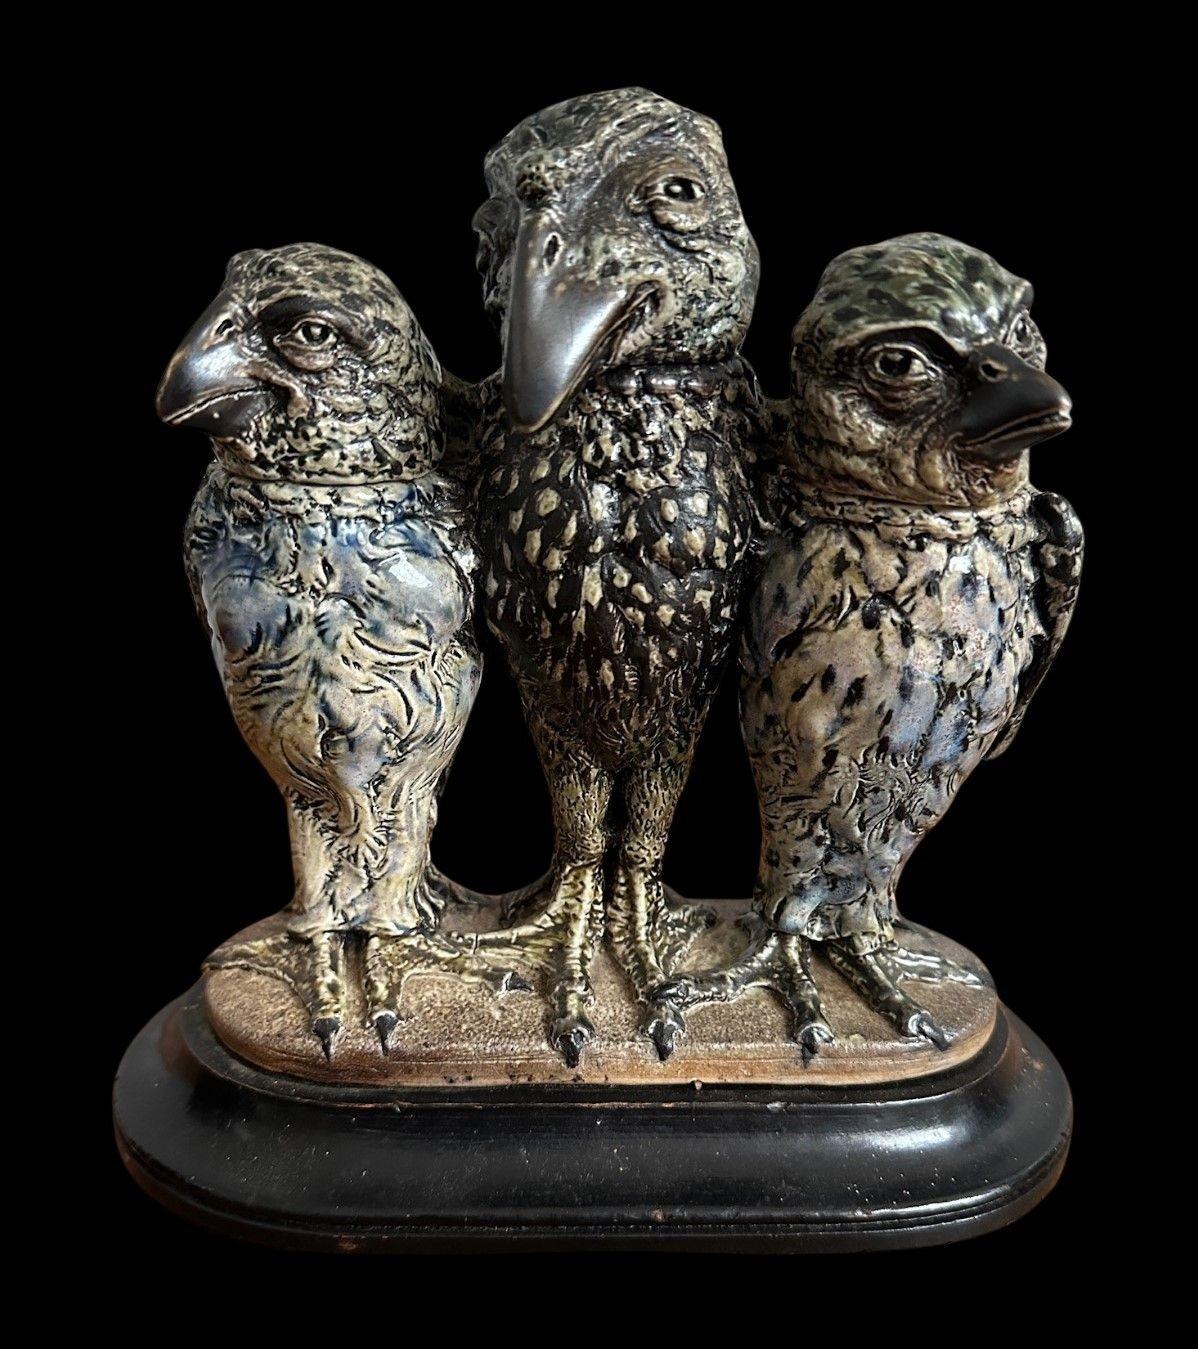 13
R. W. Martin für die Gebrüder Martin, eine seltene und gut modellierte Dreiergruppe von Vögeln in Form eines zentralen männlichen Vogels und eines weiblichen Vogels zu beiden Seiten.
17,5 cm hoch, 16 cm breit, 6 cm tief
Datiert 1914